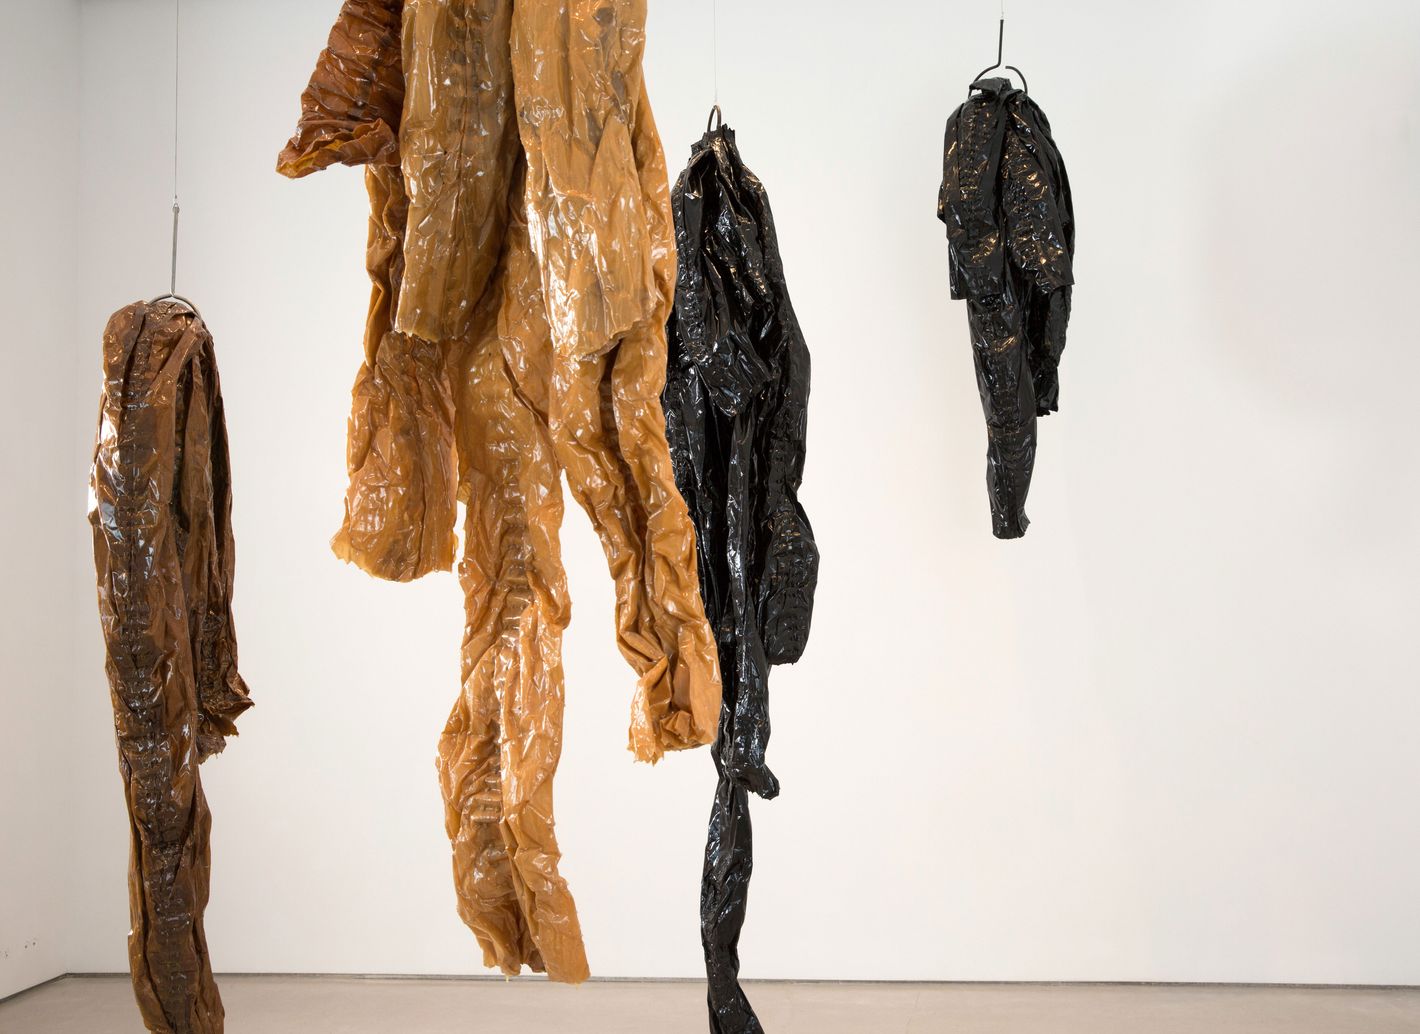 Helmut Lang creates sculptures from surplus Saint Laurent